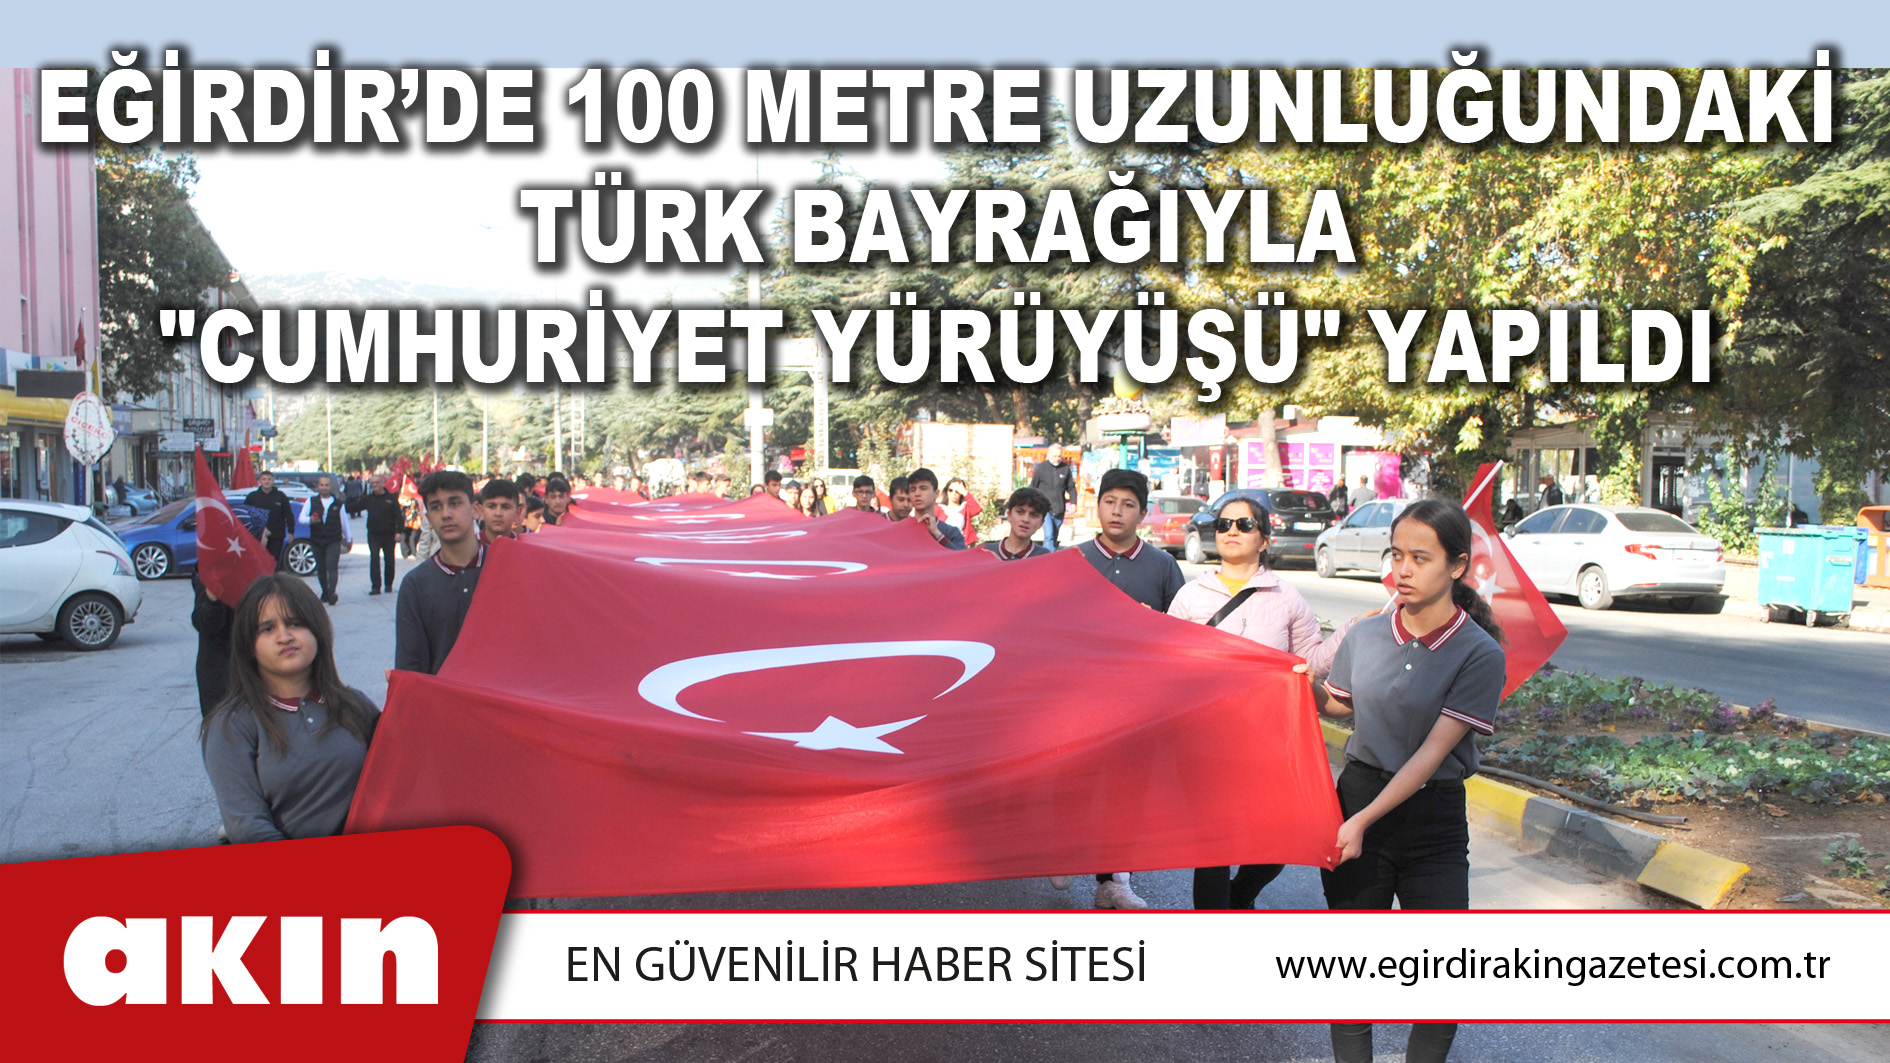 eğirdir haber,akın gazetesi,egirdir haberler,son dakika,Eğirdir’de 100 Metre Uzunluğundaki Türk Bayrağıyla "Cumhuriyet Yürüyüşü" Yapıldı